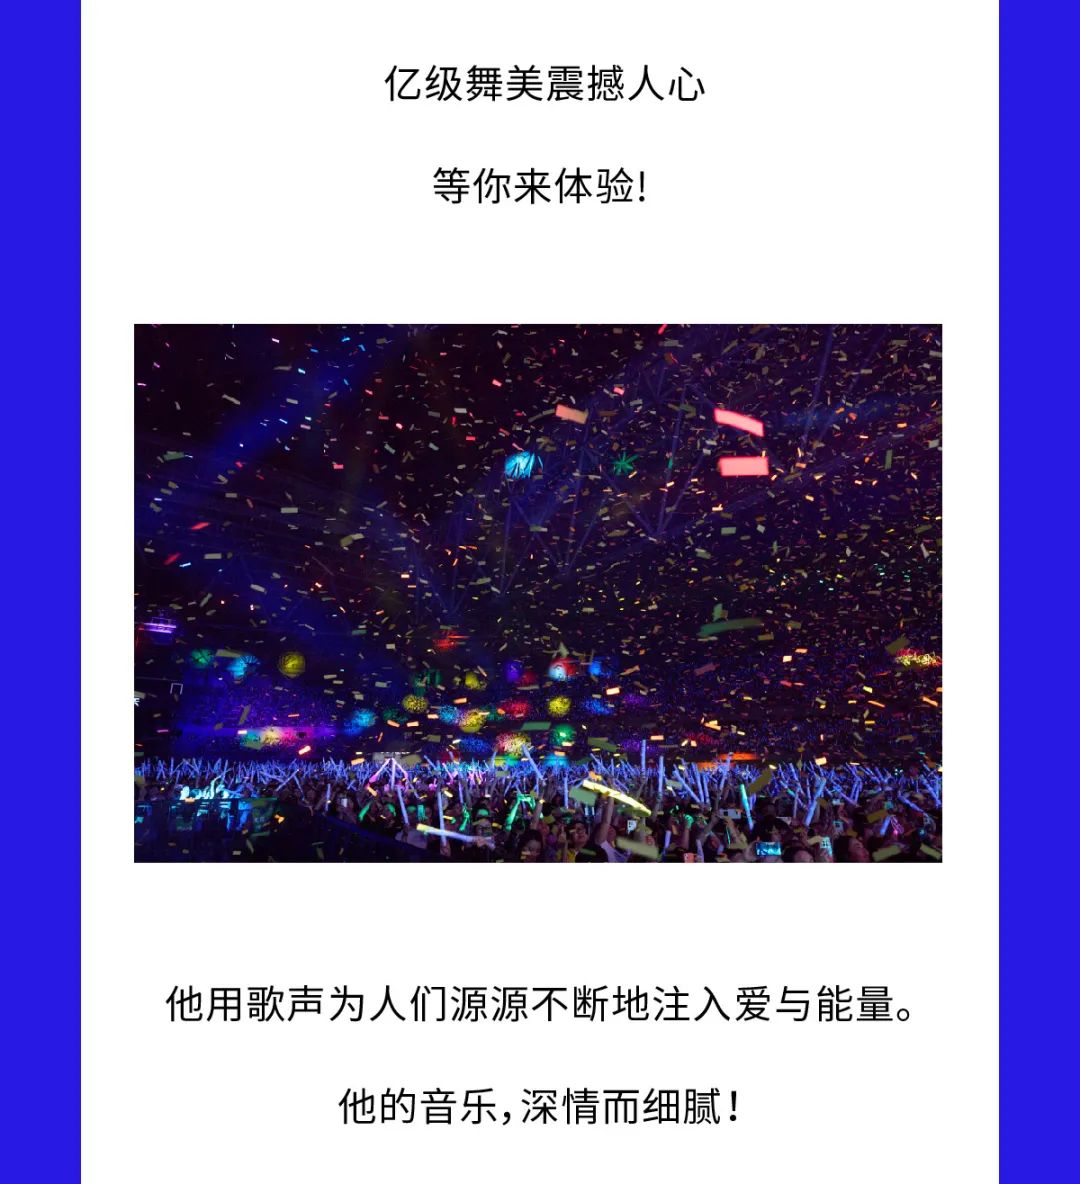 张信哲「未来式终极版」世界巡回演唱会—西宁站惊喜开启预售